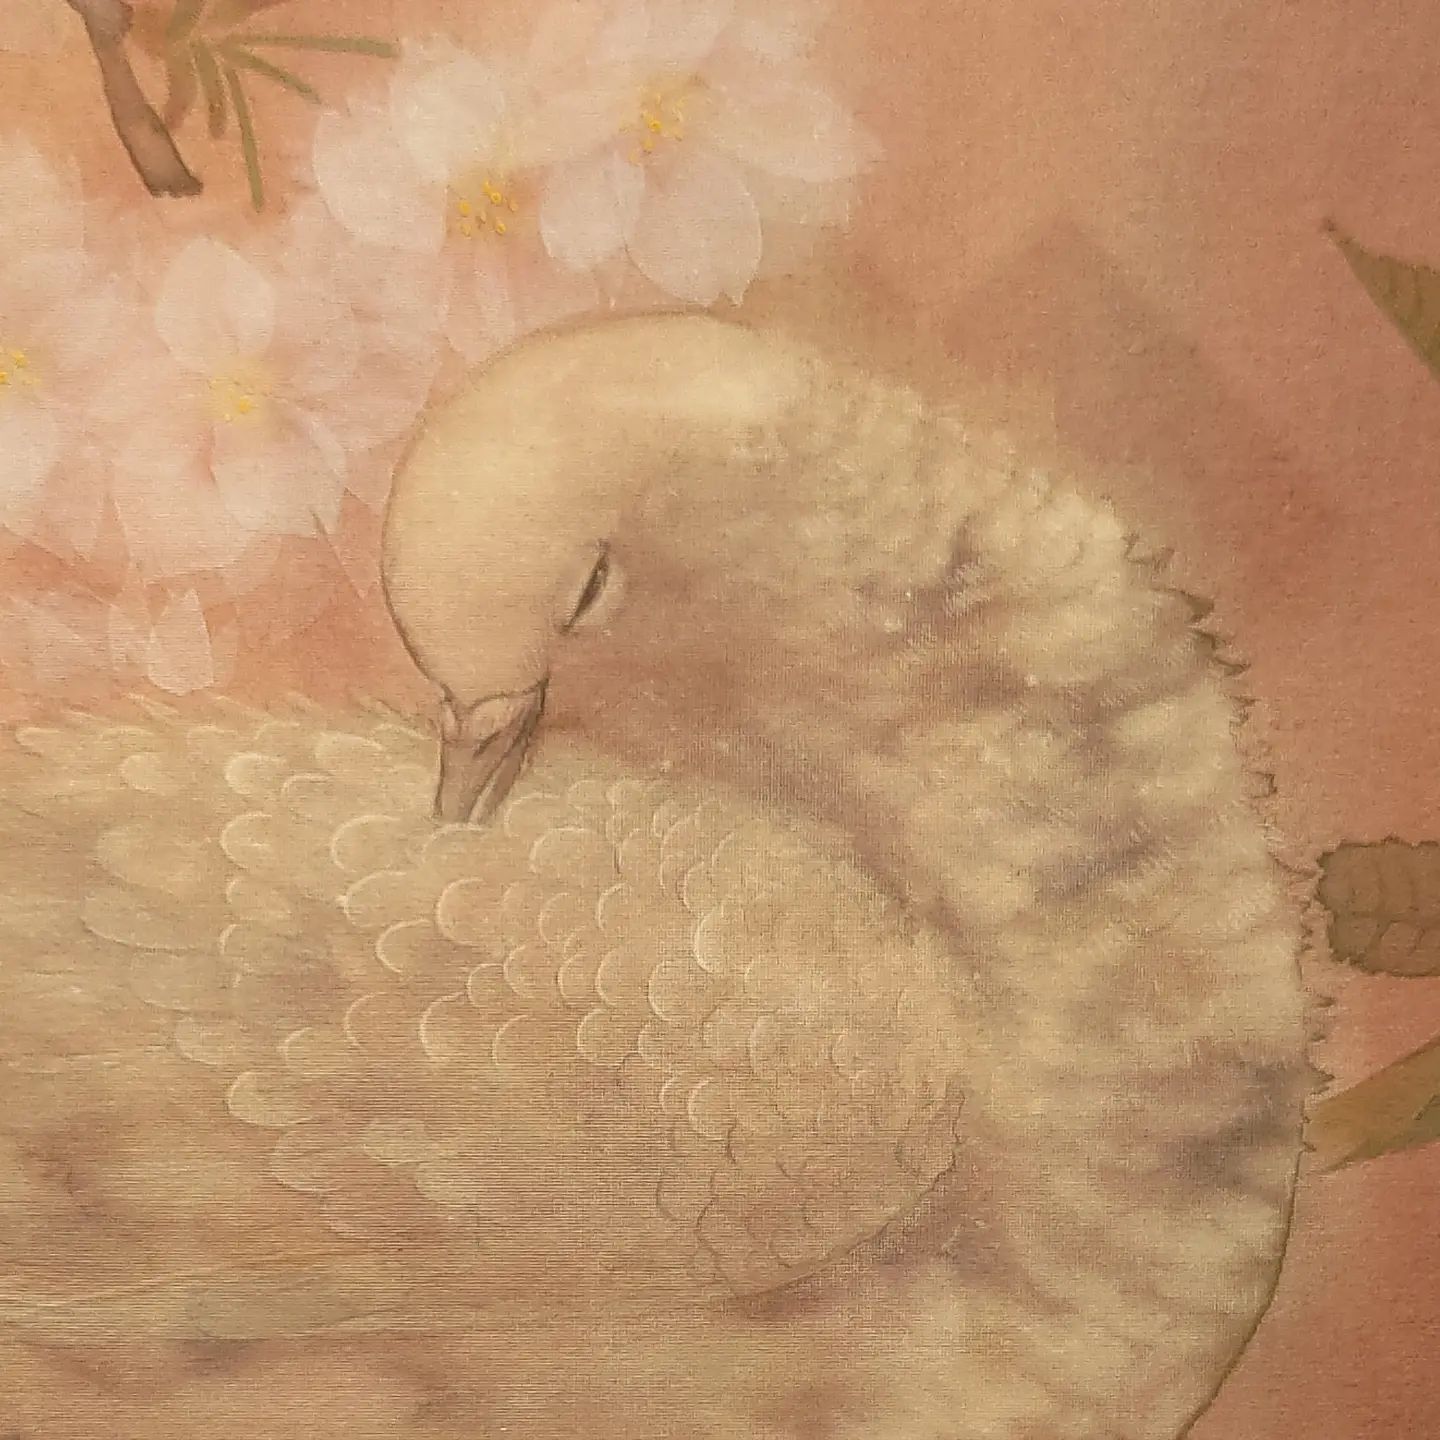 『花燦花』F15
八重桜の枝の上で、はづくろいをしている鳩を描きました。八重桜の花びらは薄い後粉を使い、一枚一枚透けるように描いています。

中内共路個展『風の言の葉』
場所　広島福屋八丁堀本店7階美術画廊
会期　12月8日（木）～14日（水）
時間　10:30～19:30　（最終日は16:00まで）